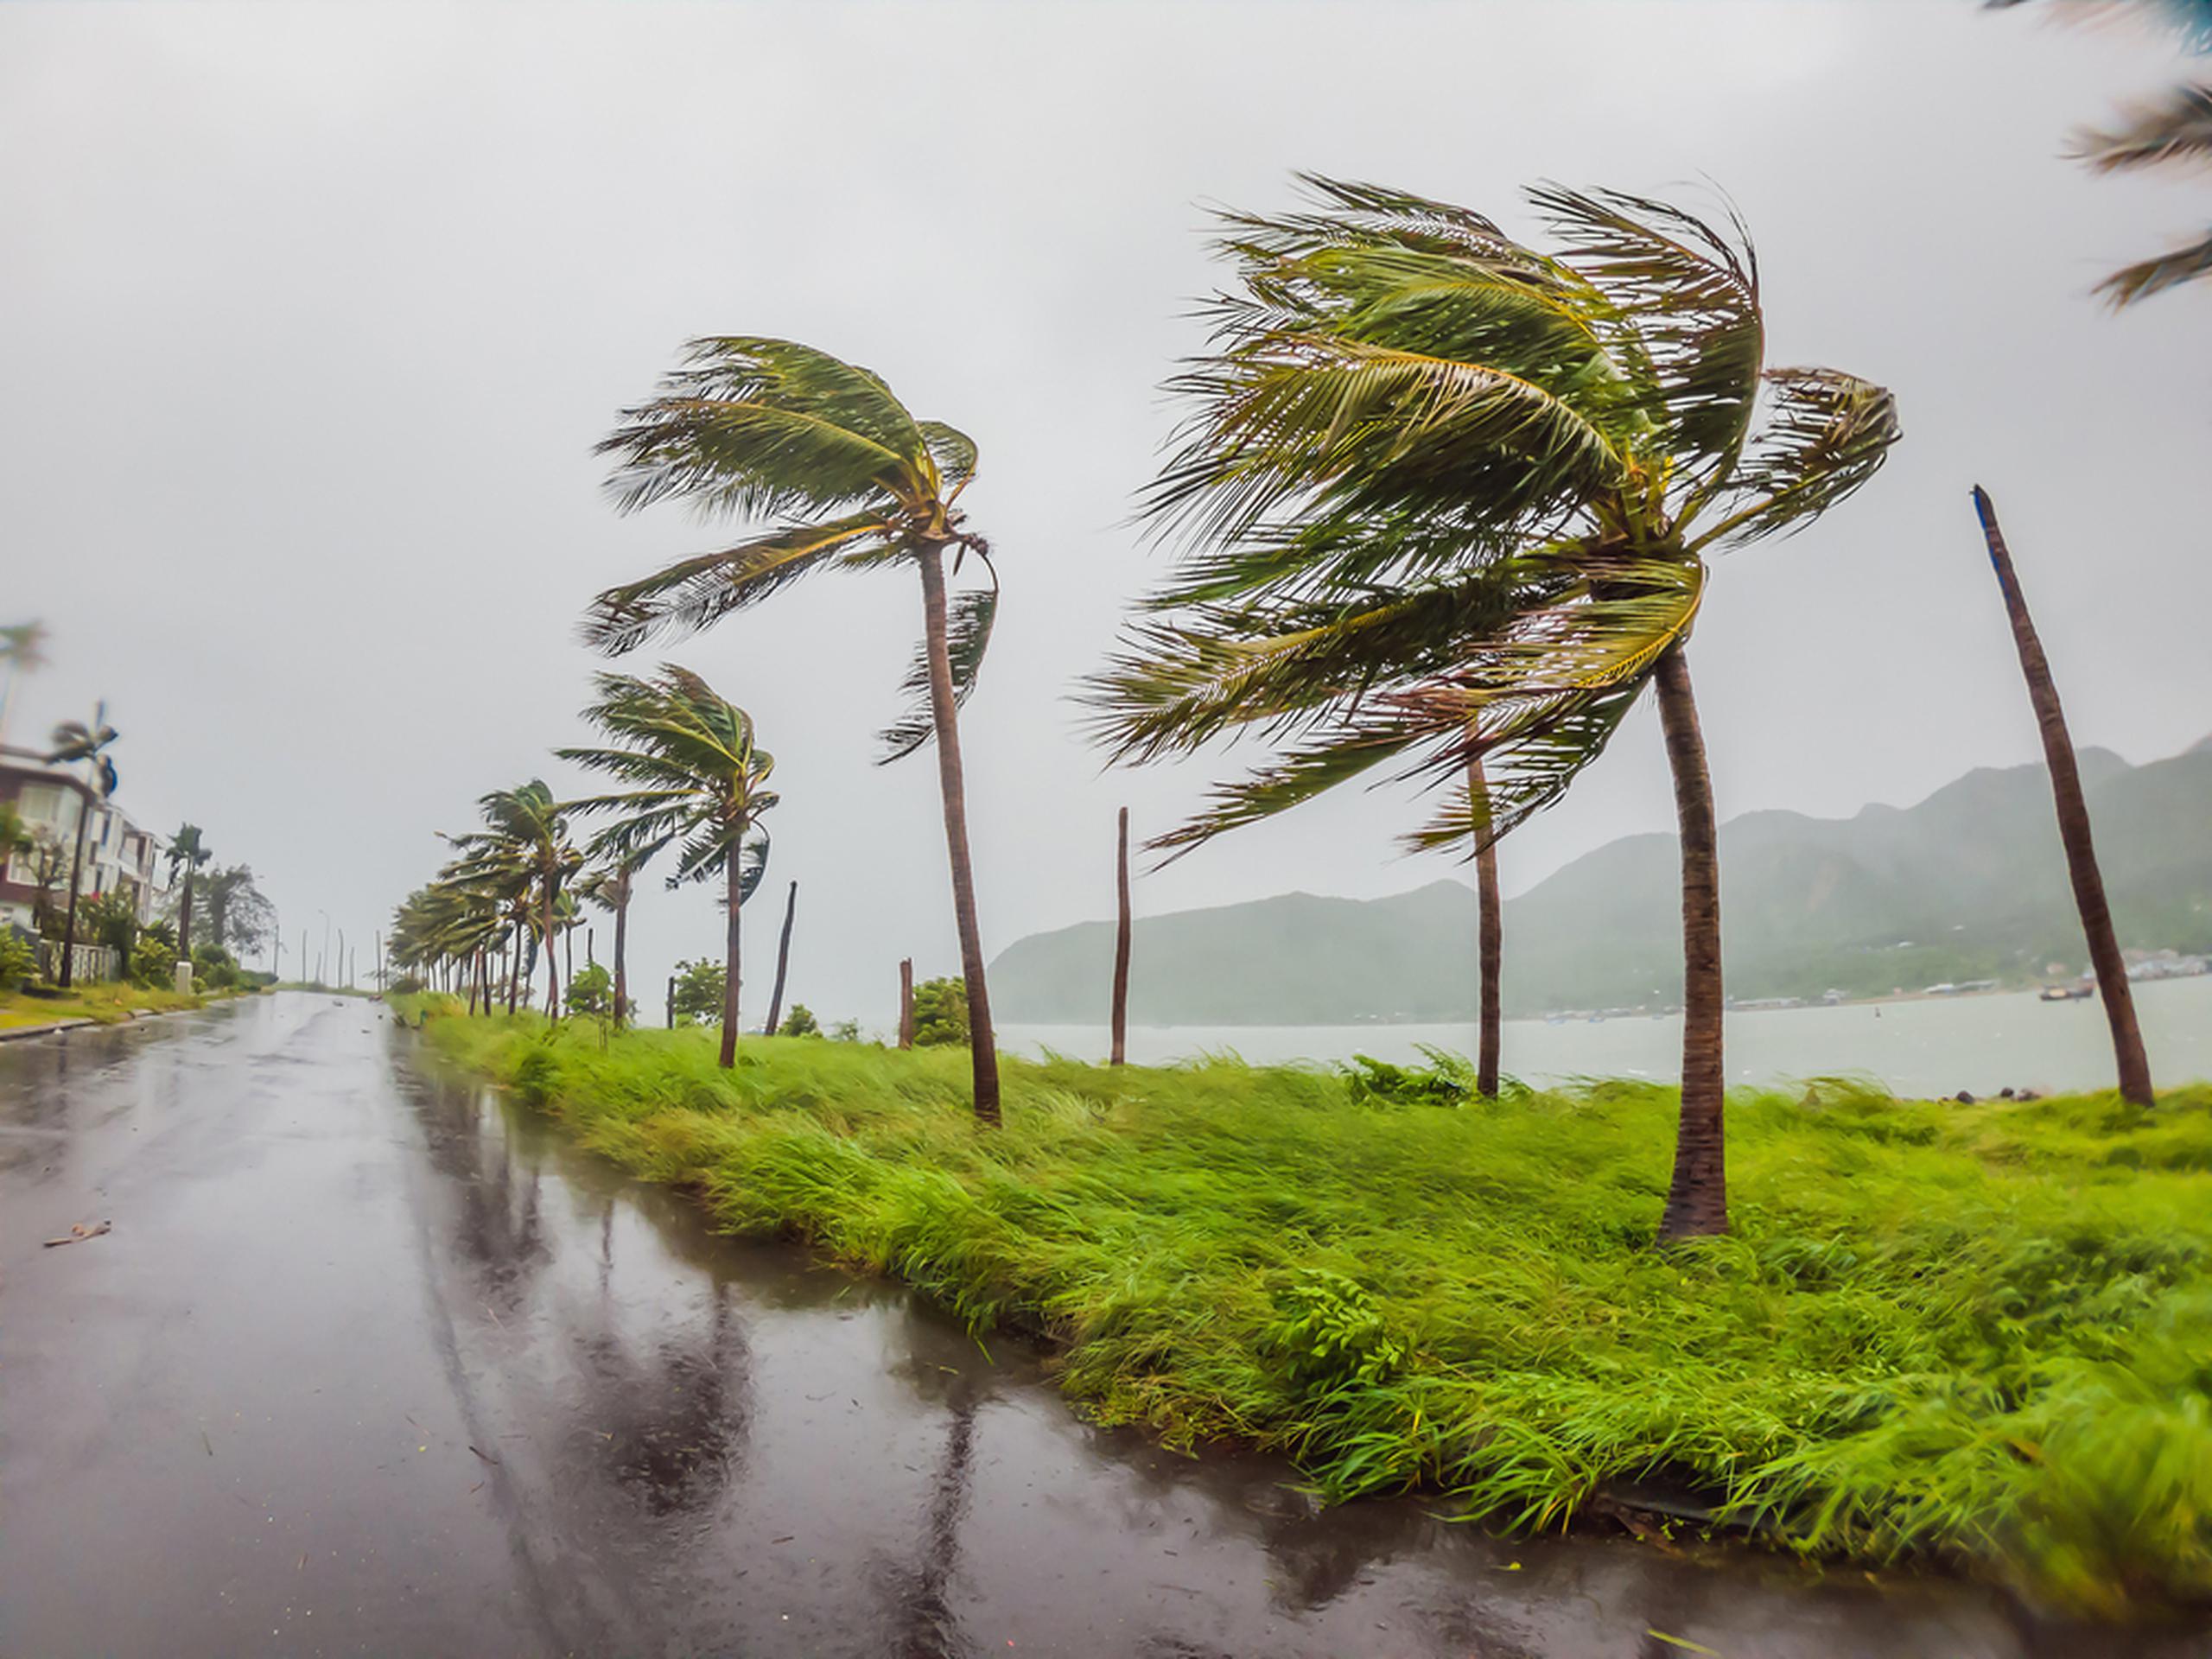 La NOAA pronostica que, este año, habrá un total de 12 a 17 tormentas con nombre (con vientos de 39 millas por hora o más); de las cuales entre 5 y 9 podrían convertirse en huracanes (con vientos de 74 mph o más), incluidos de 1 a 4 huracanes intensos (de categoría 3, 4 o 5, con vientos de 111 mph o más).